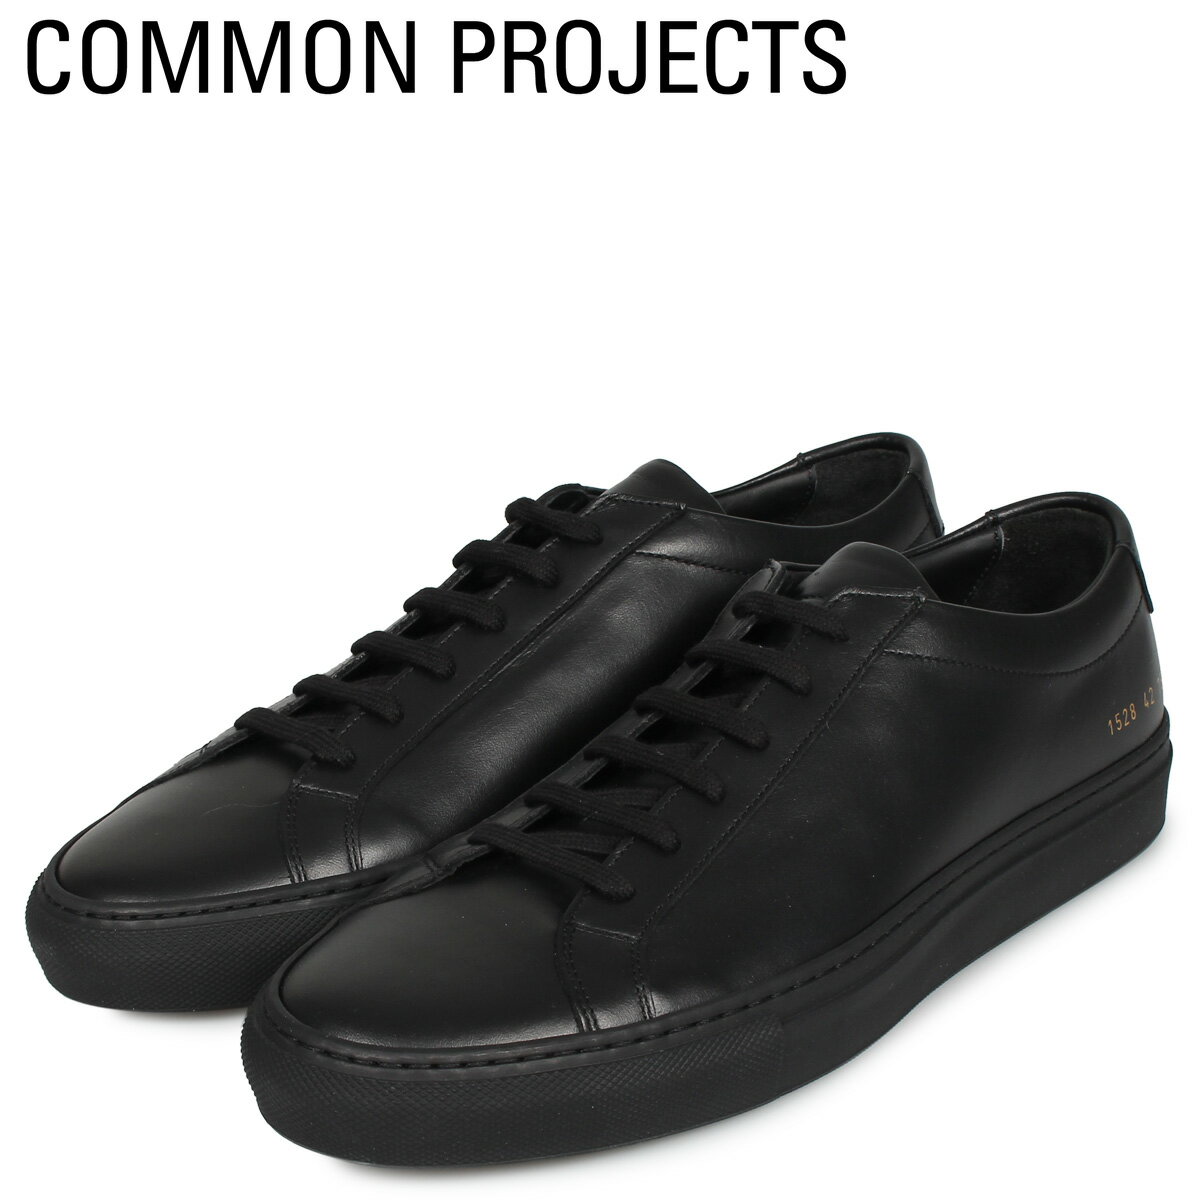  Common Projects コモンプロジェクト アキレス ロー スニーカー メンズ ACHILLES LOW ブラック 黒 1528-7547